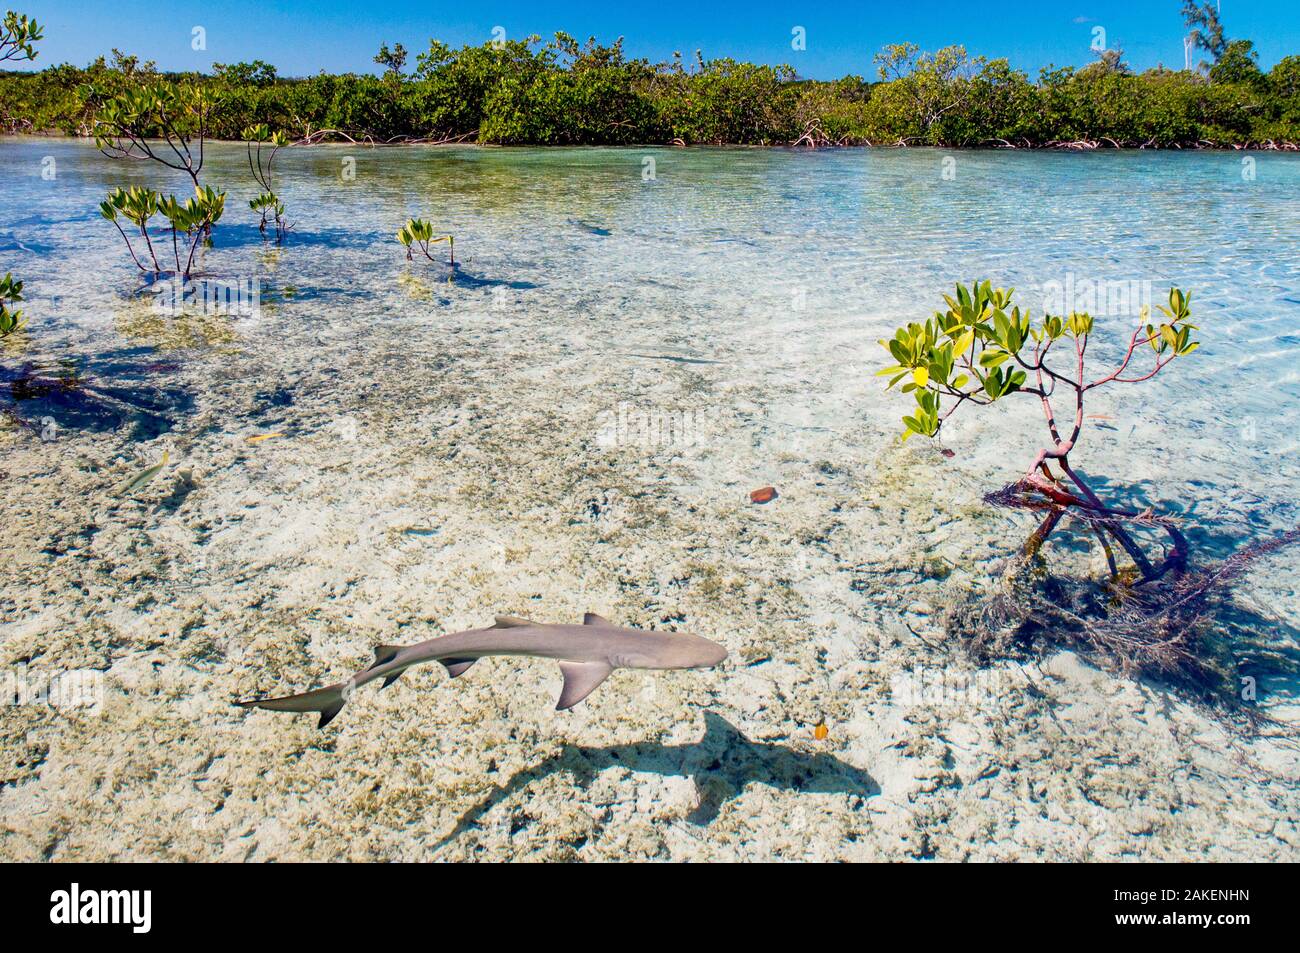 Lo squalo limone cuccioli (Negaprion brevirostris) trascorrere la prima 5-8 anni della loro vita in foreste di mangrovie. Il groviglio di radici fornisce protezione dai predatori ed è pieno di potenziale preda come il novellame e i granchi. Foto Stock